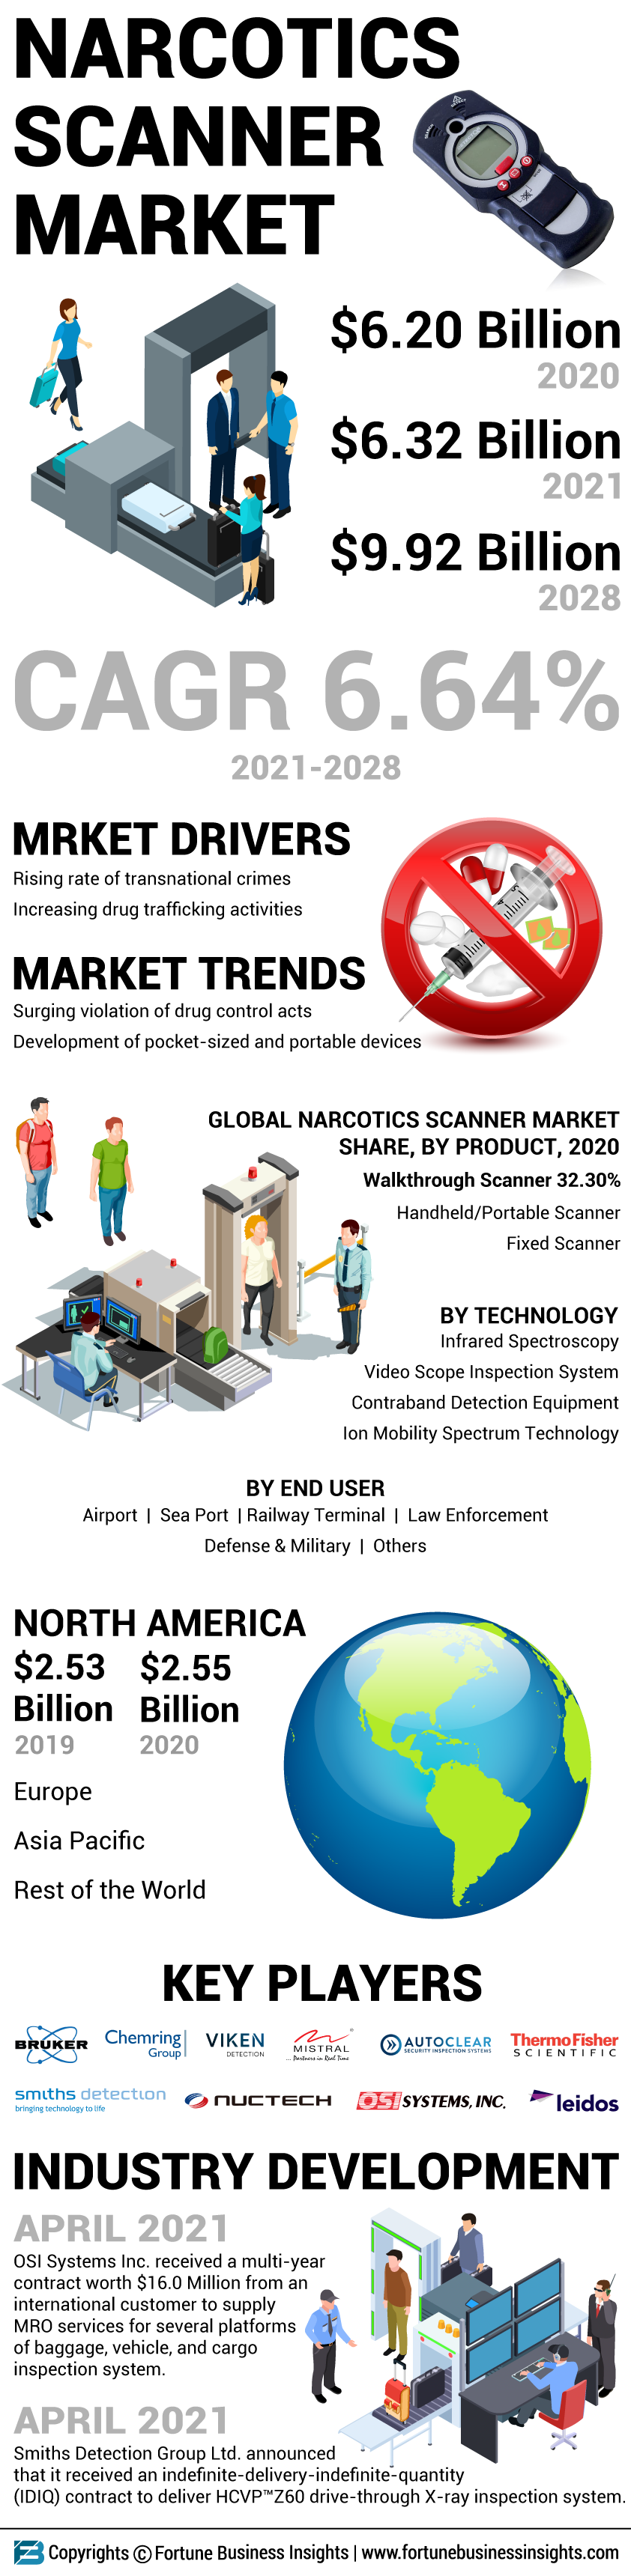 Narcotics Scanner Market